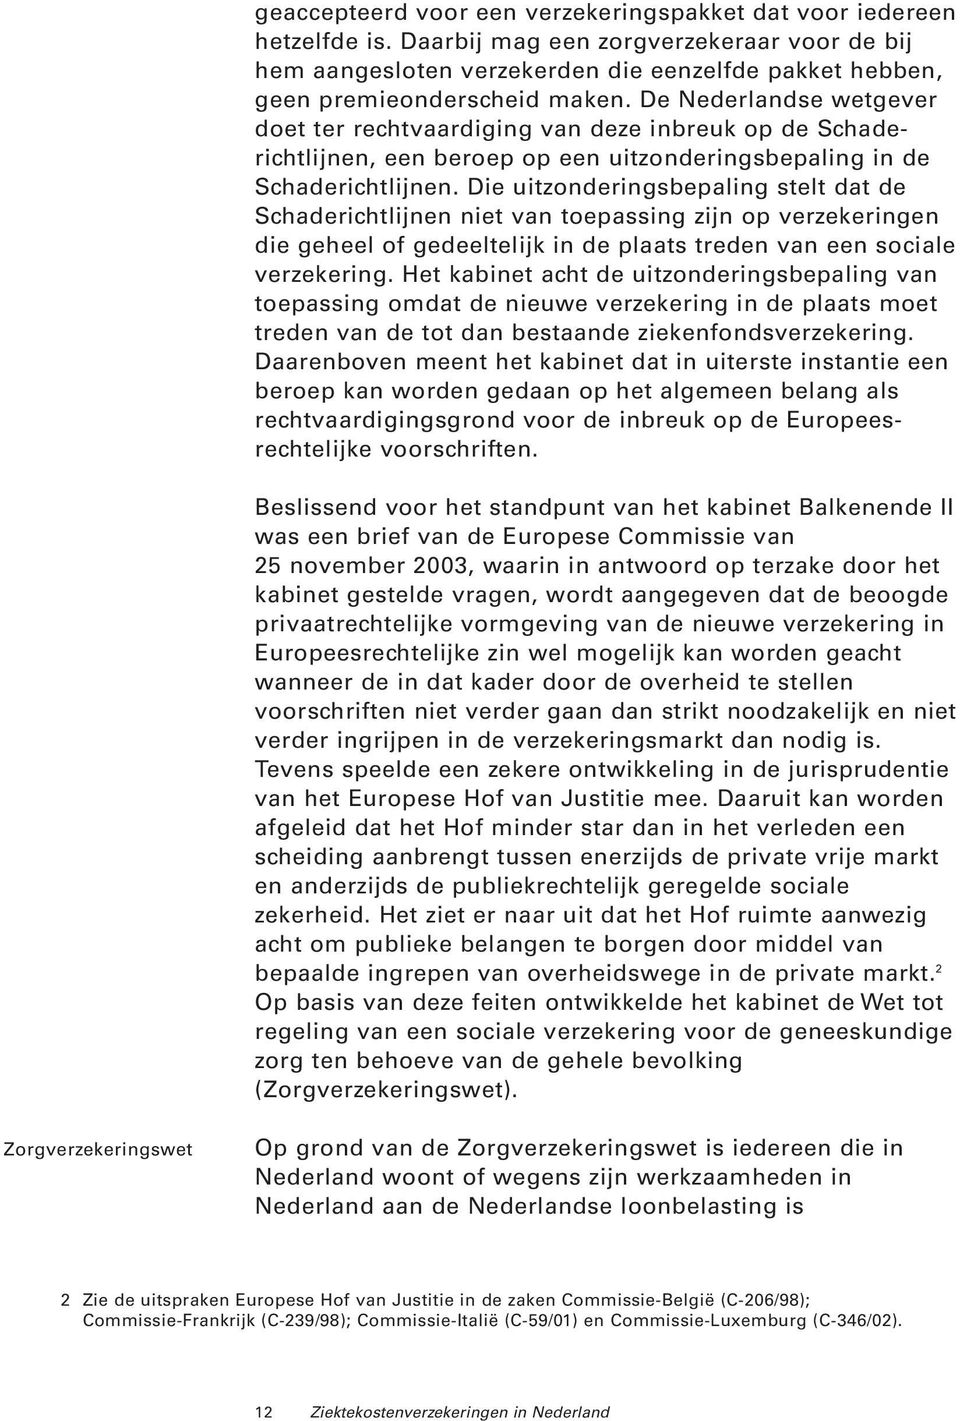 De Nederlandse wetgever doet ter rechtvaardiging van deze inbreuk op de Schaderichtlijnen, een beroep op een uitzonderingsbepaling in de Schaderichtlijnen.